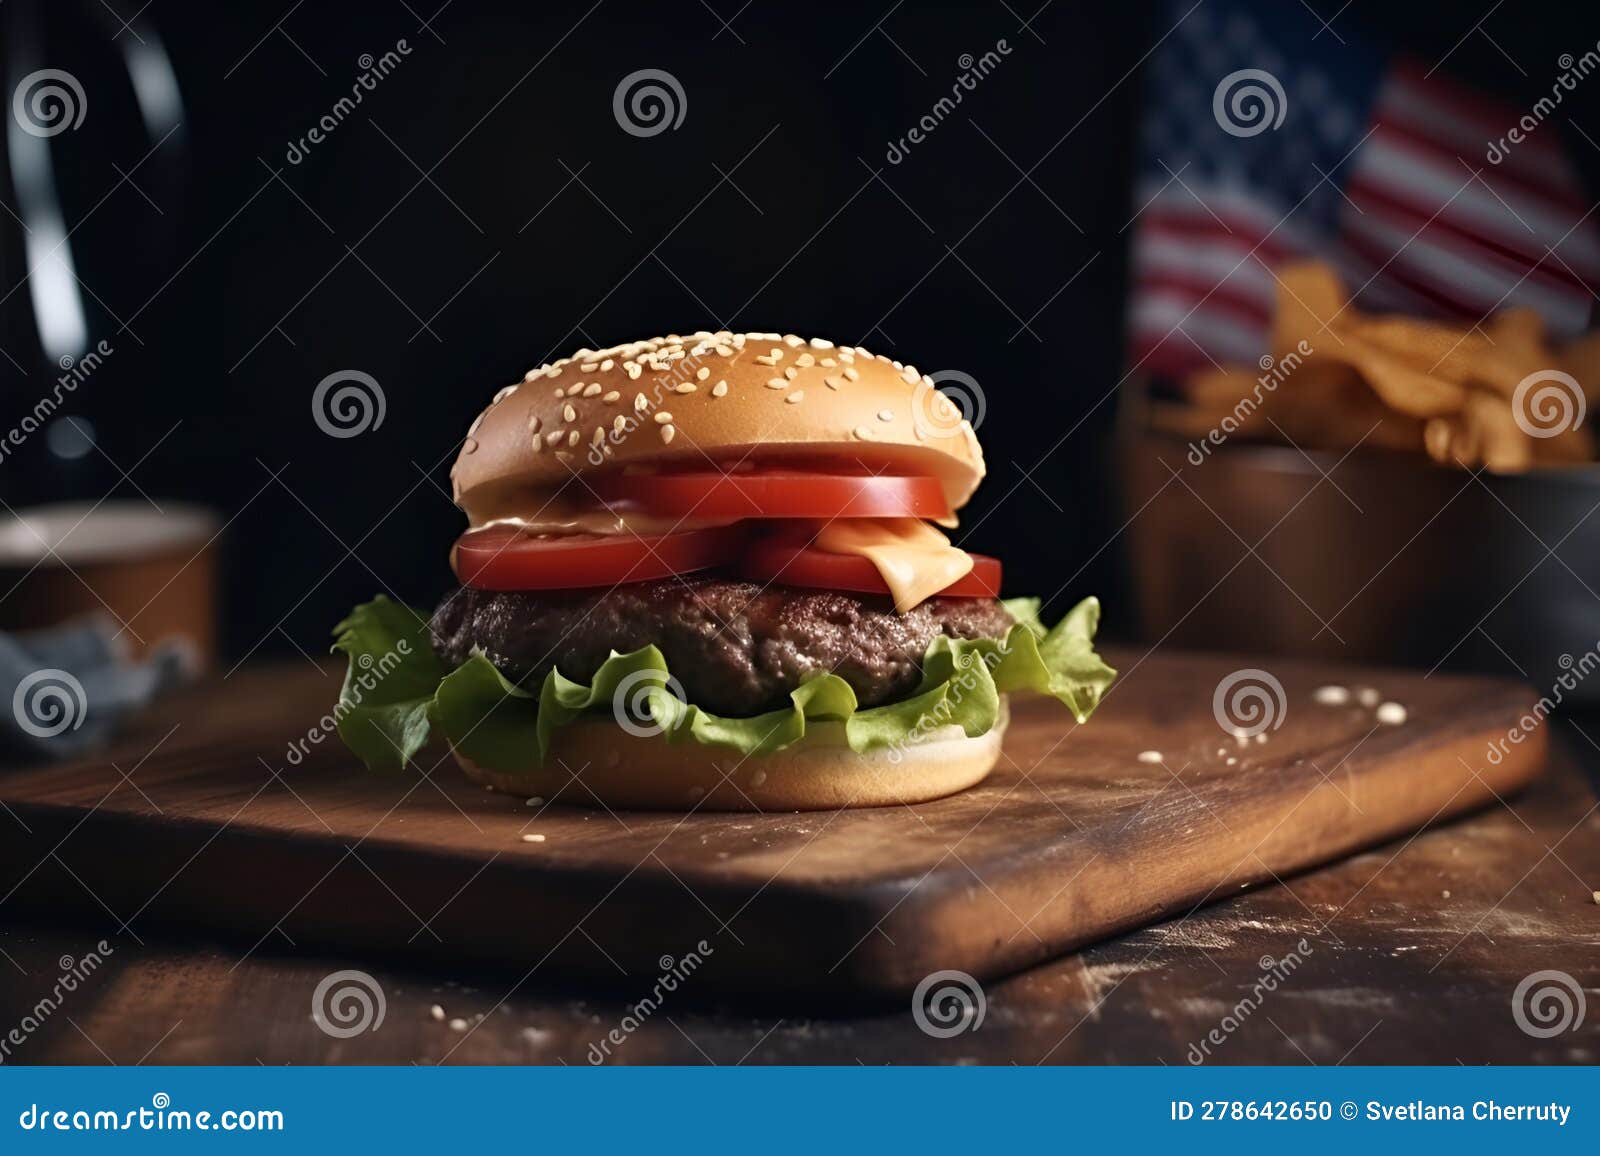 Hamburger, Frites Et Bière Avec Drapeau Américain Sur Fond. Image